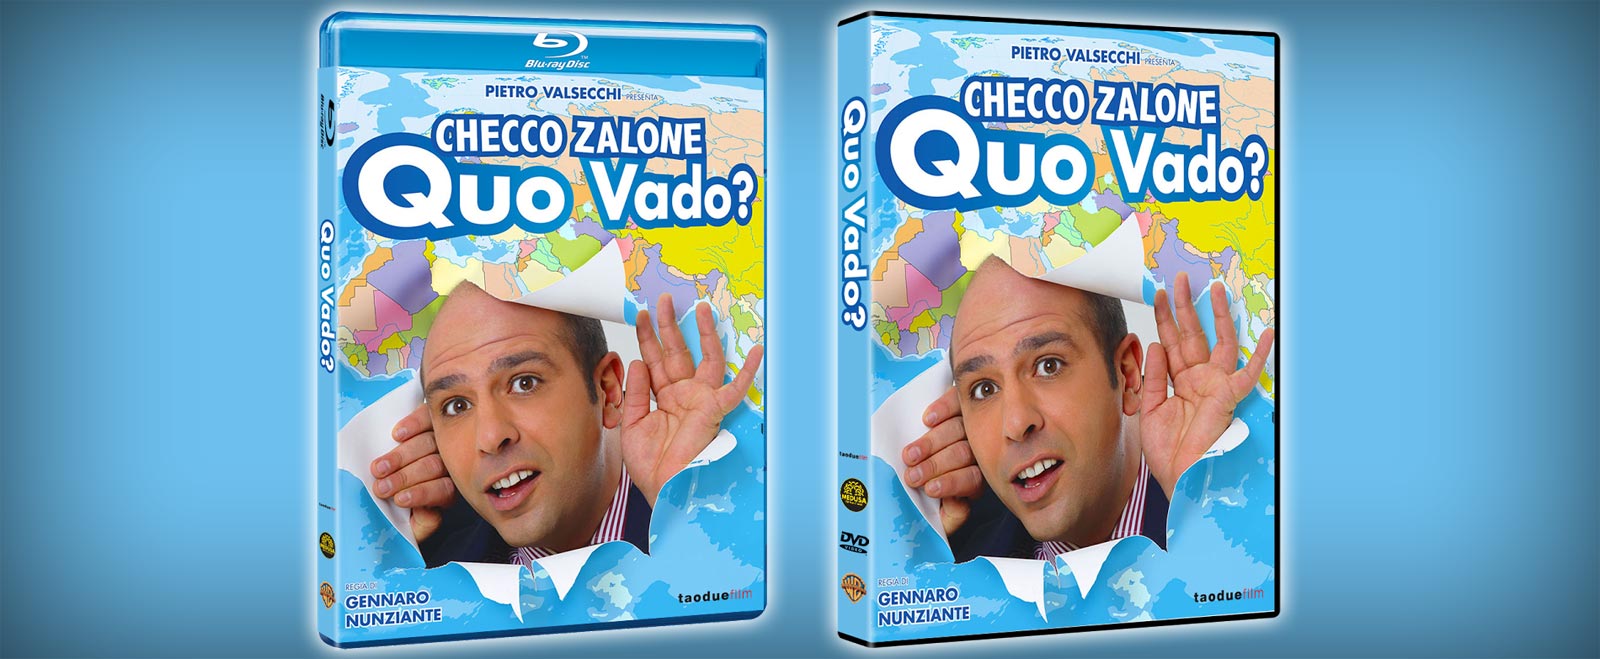 Quo Vado? di Zalone in DVD, Blu-ray